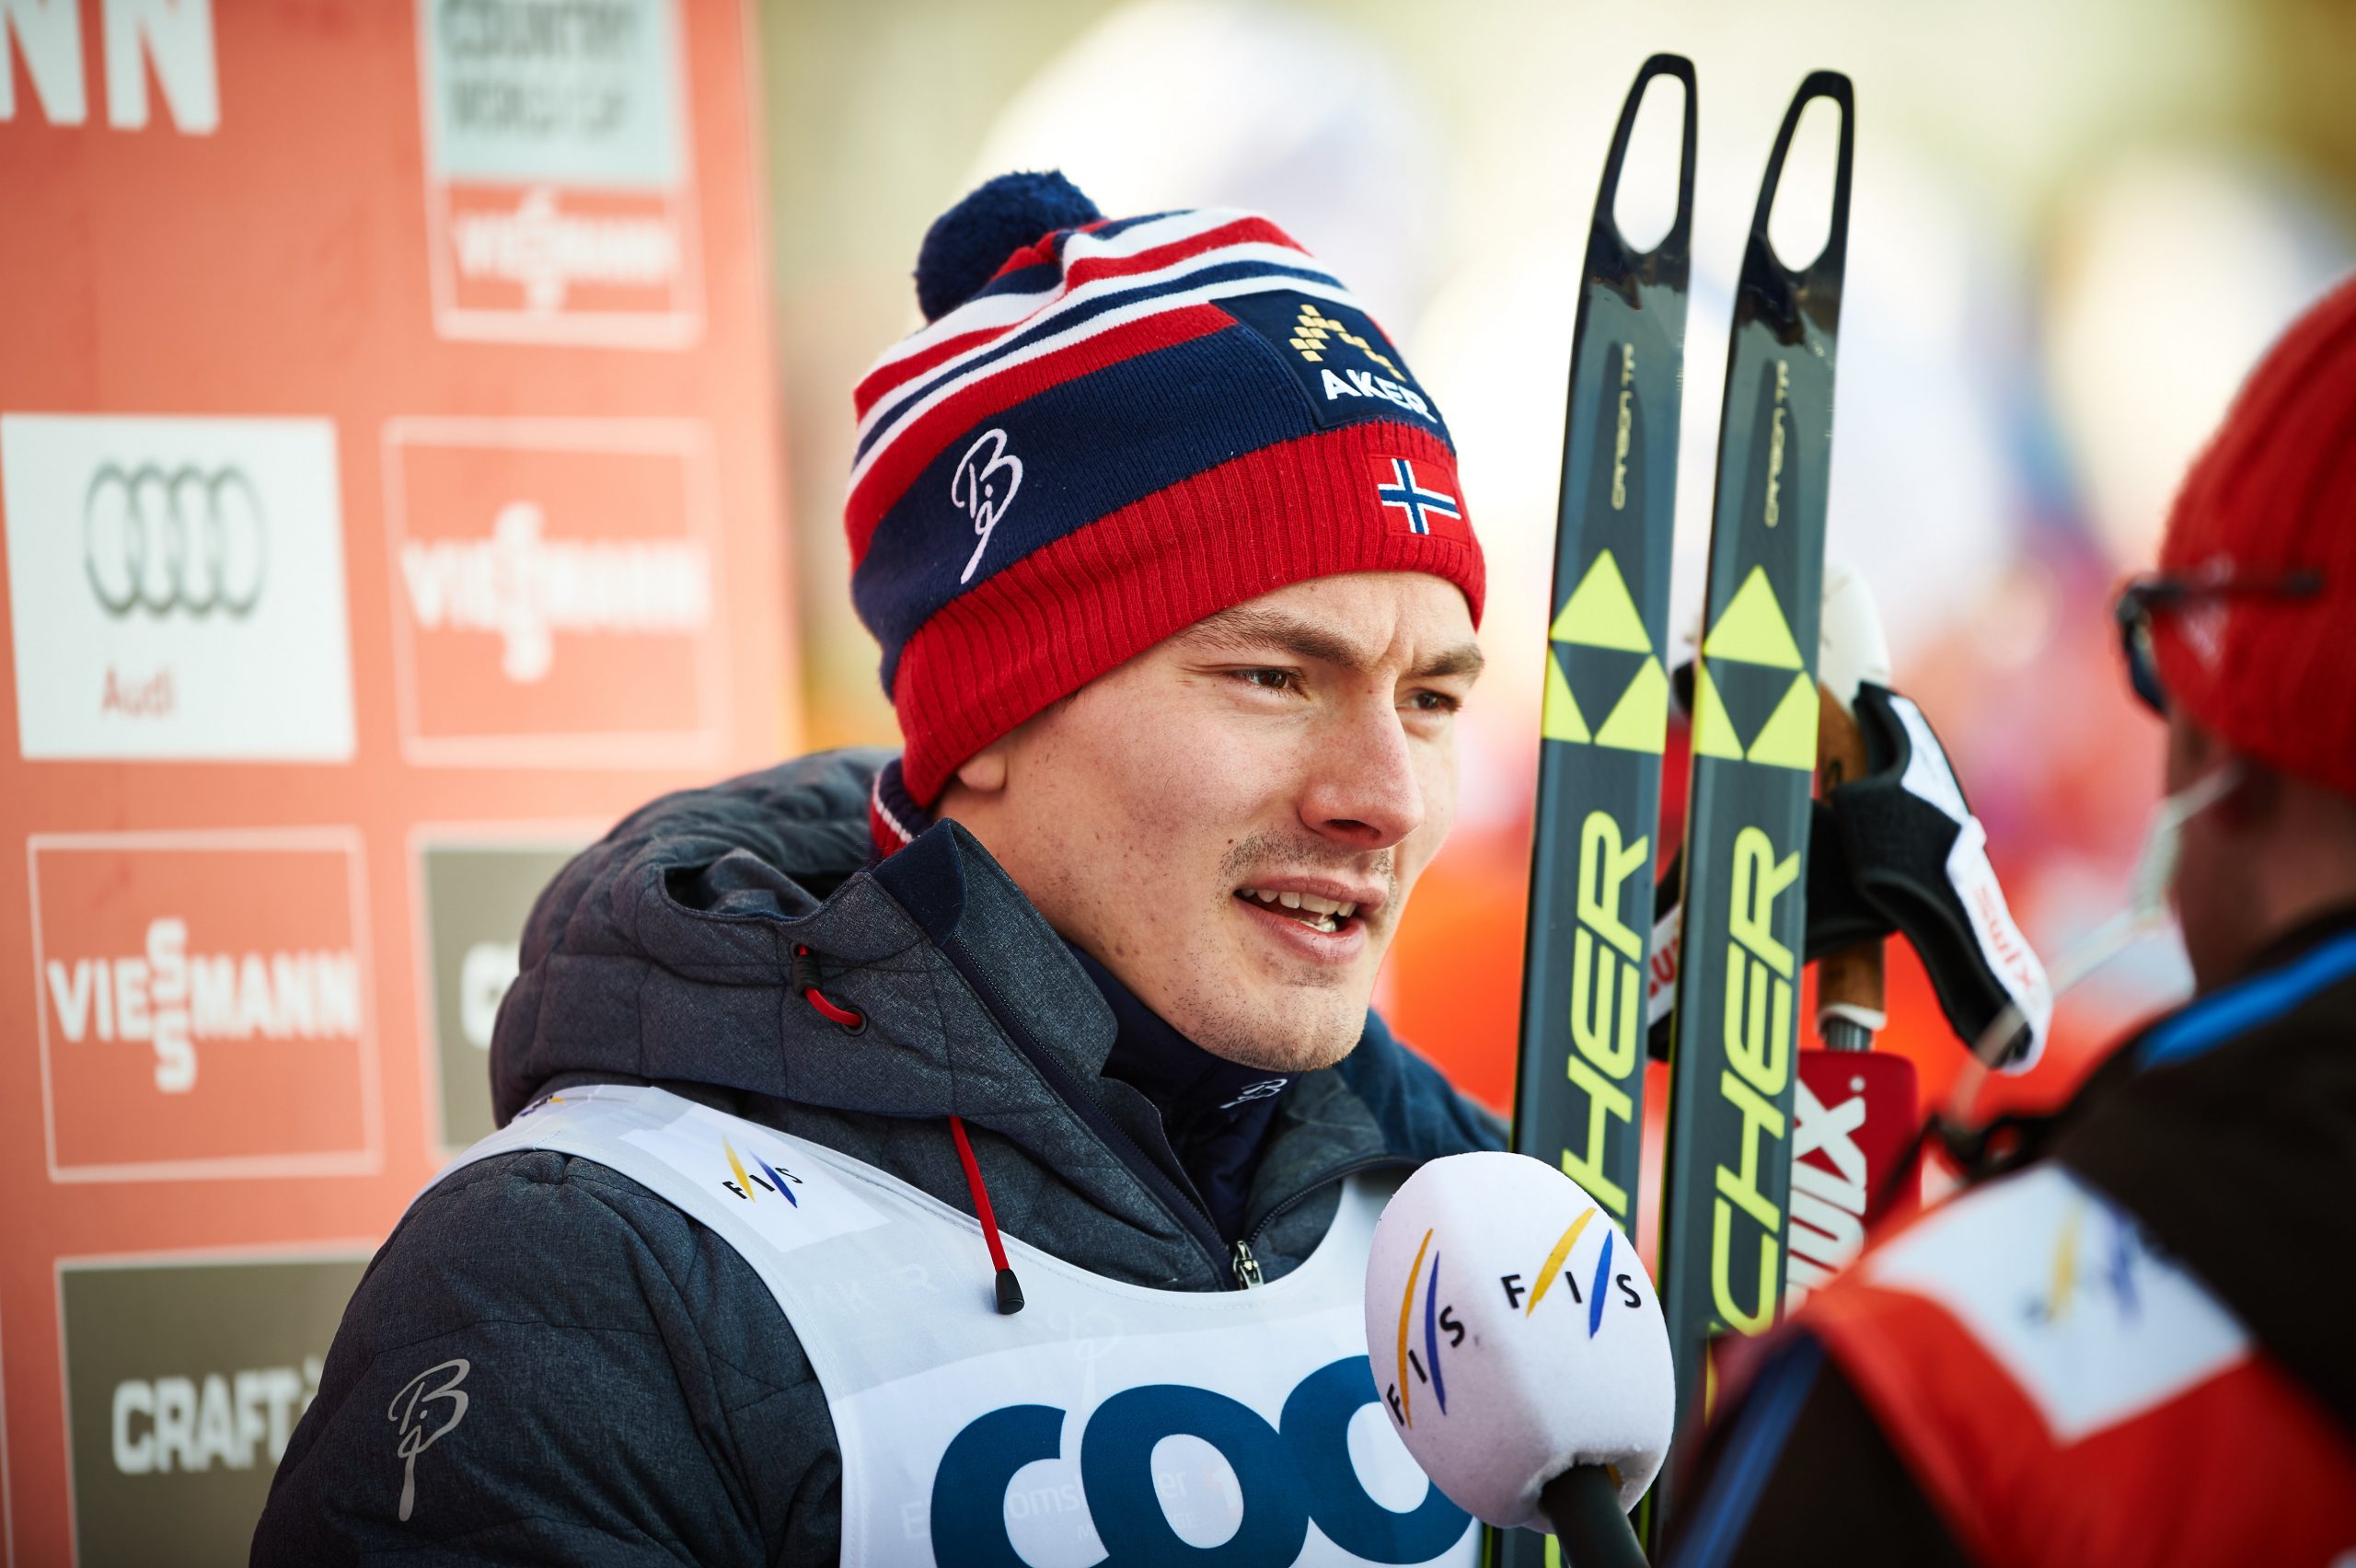 Finn Hagen Krogh, vincitore della 15 km di Oestersund (SWE). (Photo: NordicFocus)